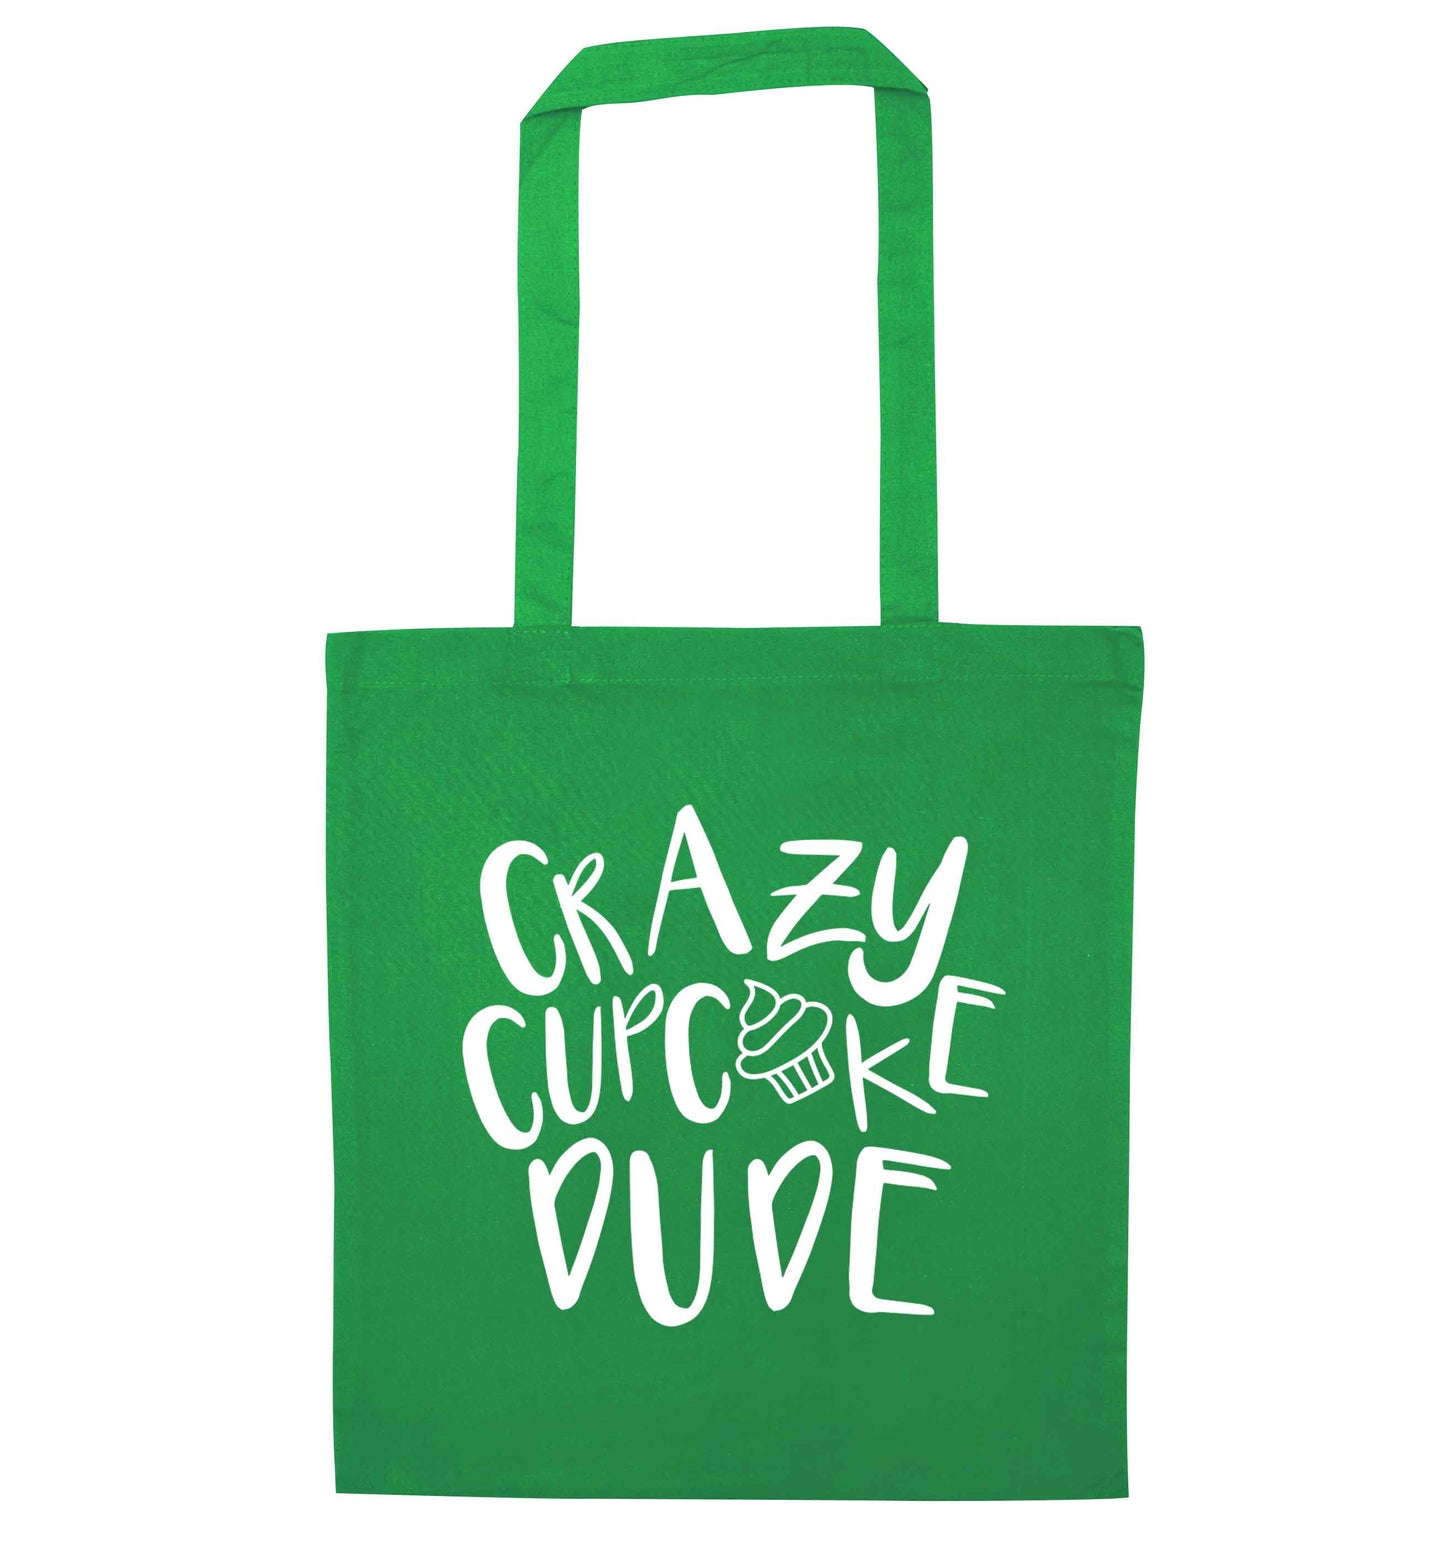 Crazy cupcake dude green tote bag